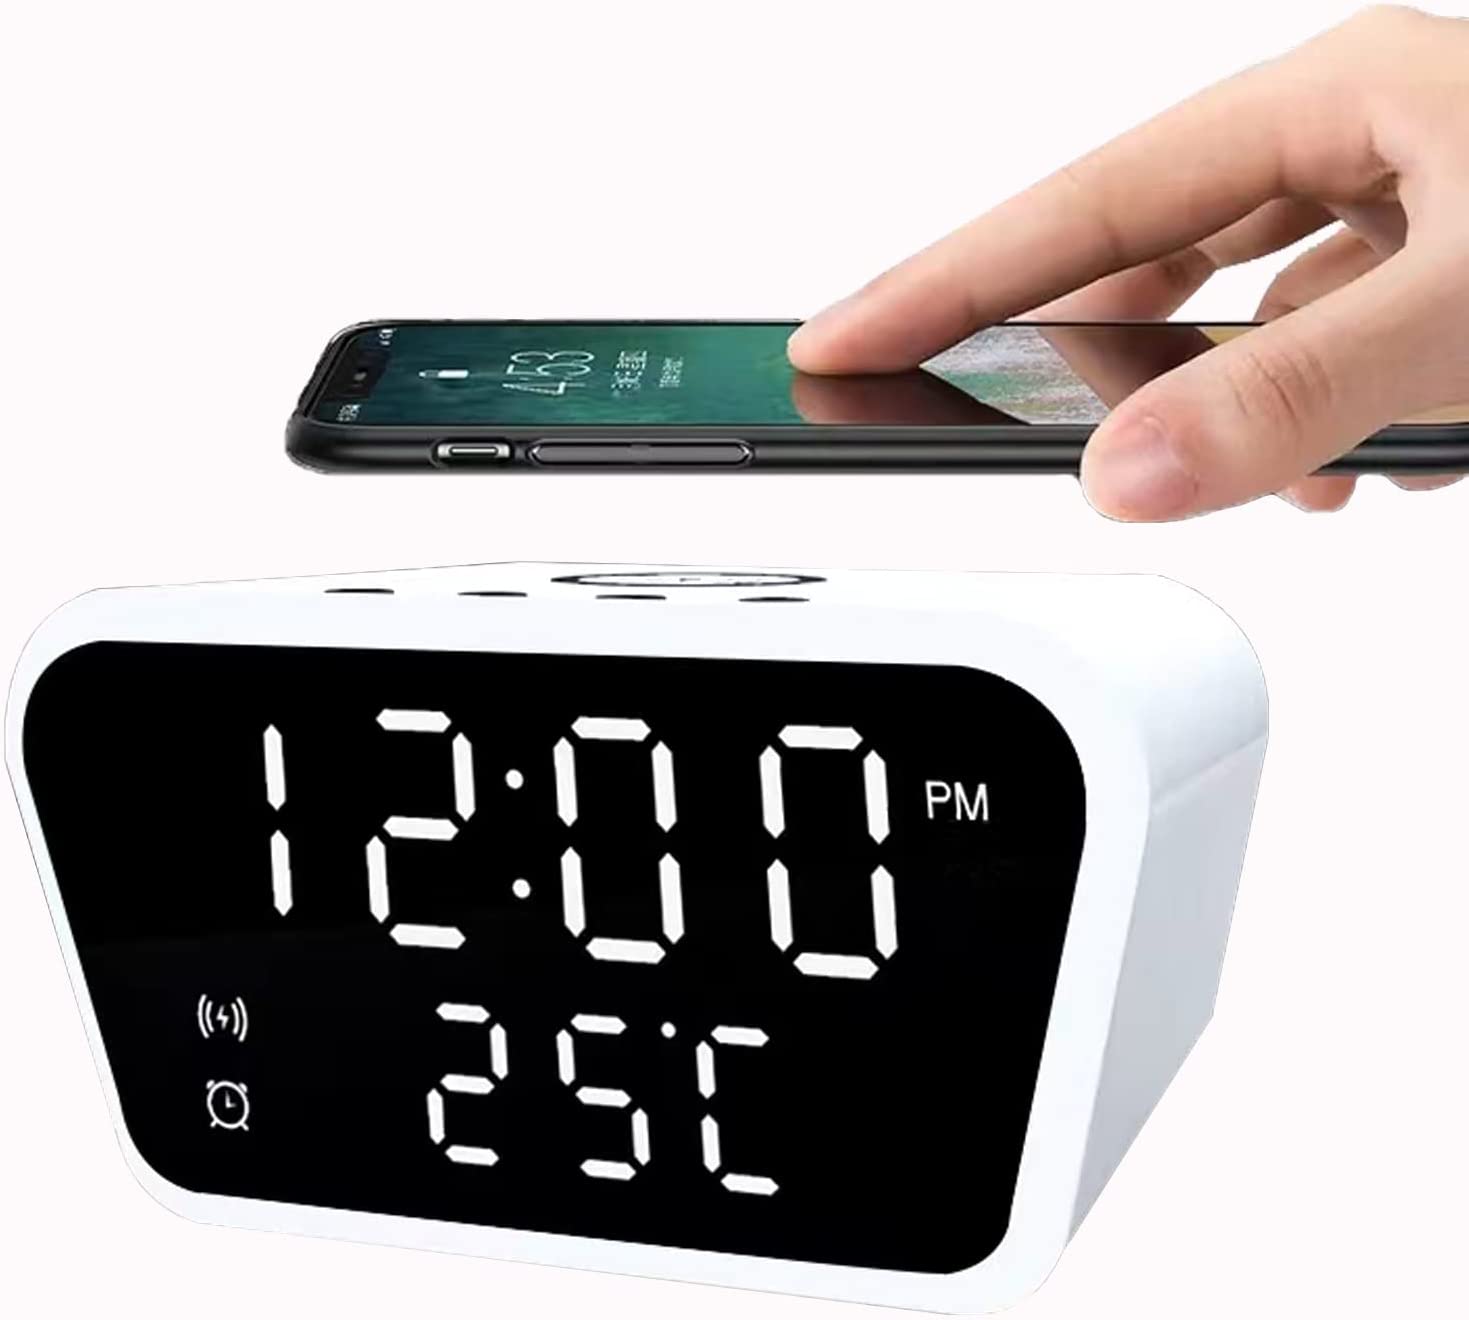 ساعت رومیزی با شارژر بی سیم GGEROU Digital Alarm Clocks with Fast Wireless Charging - ارسال ۱۰ الی ۱۵ روز کاری